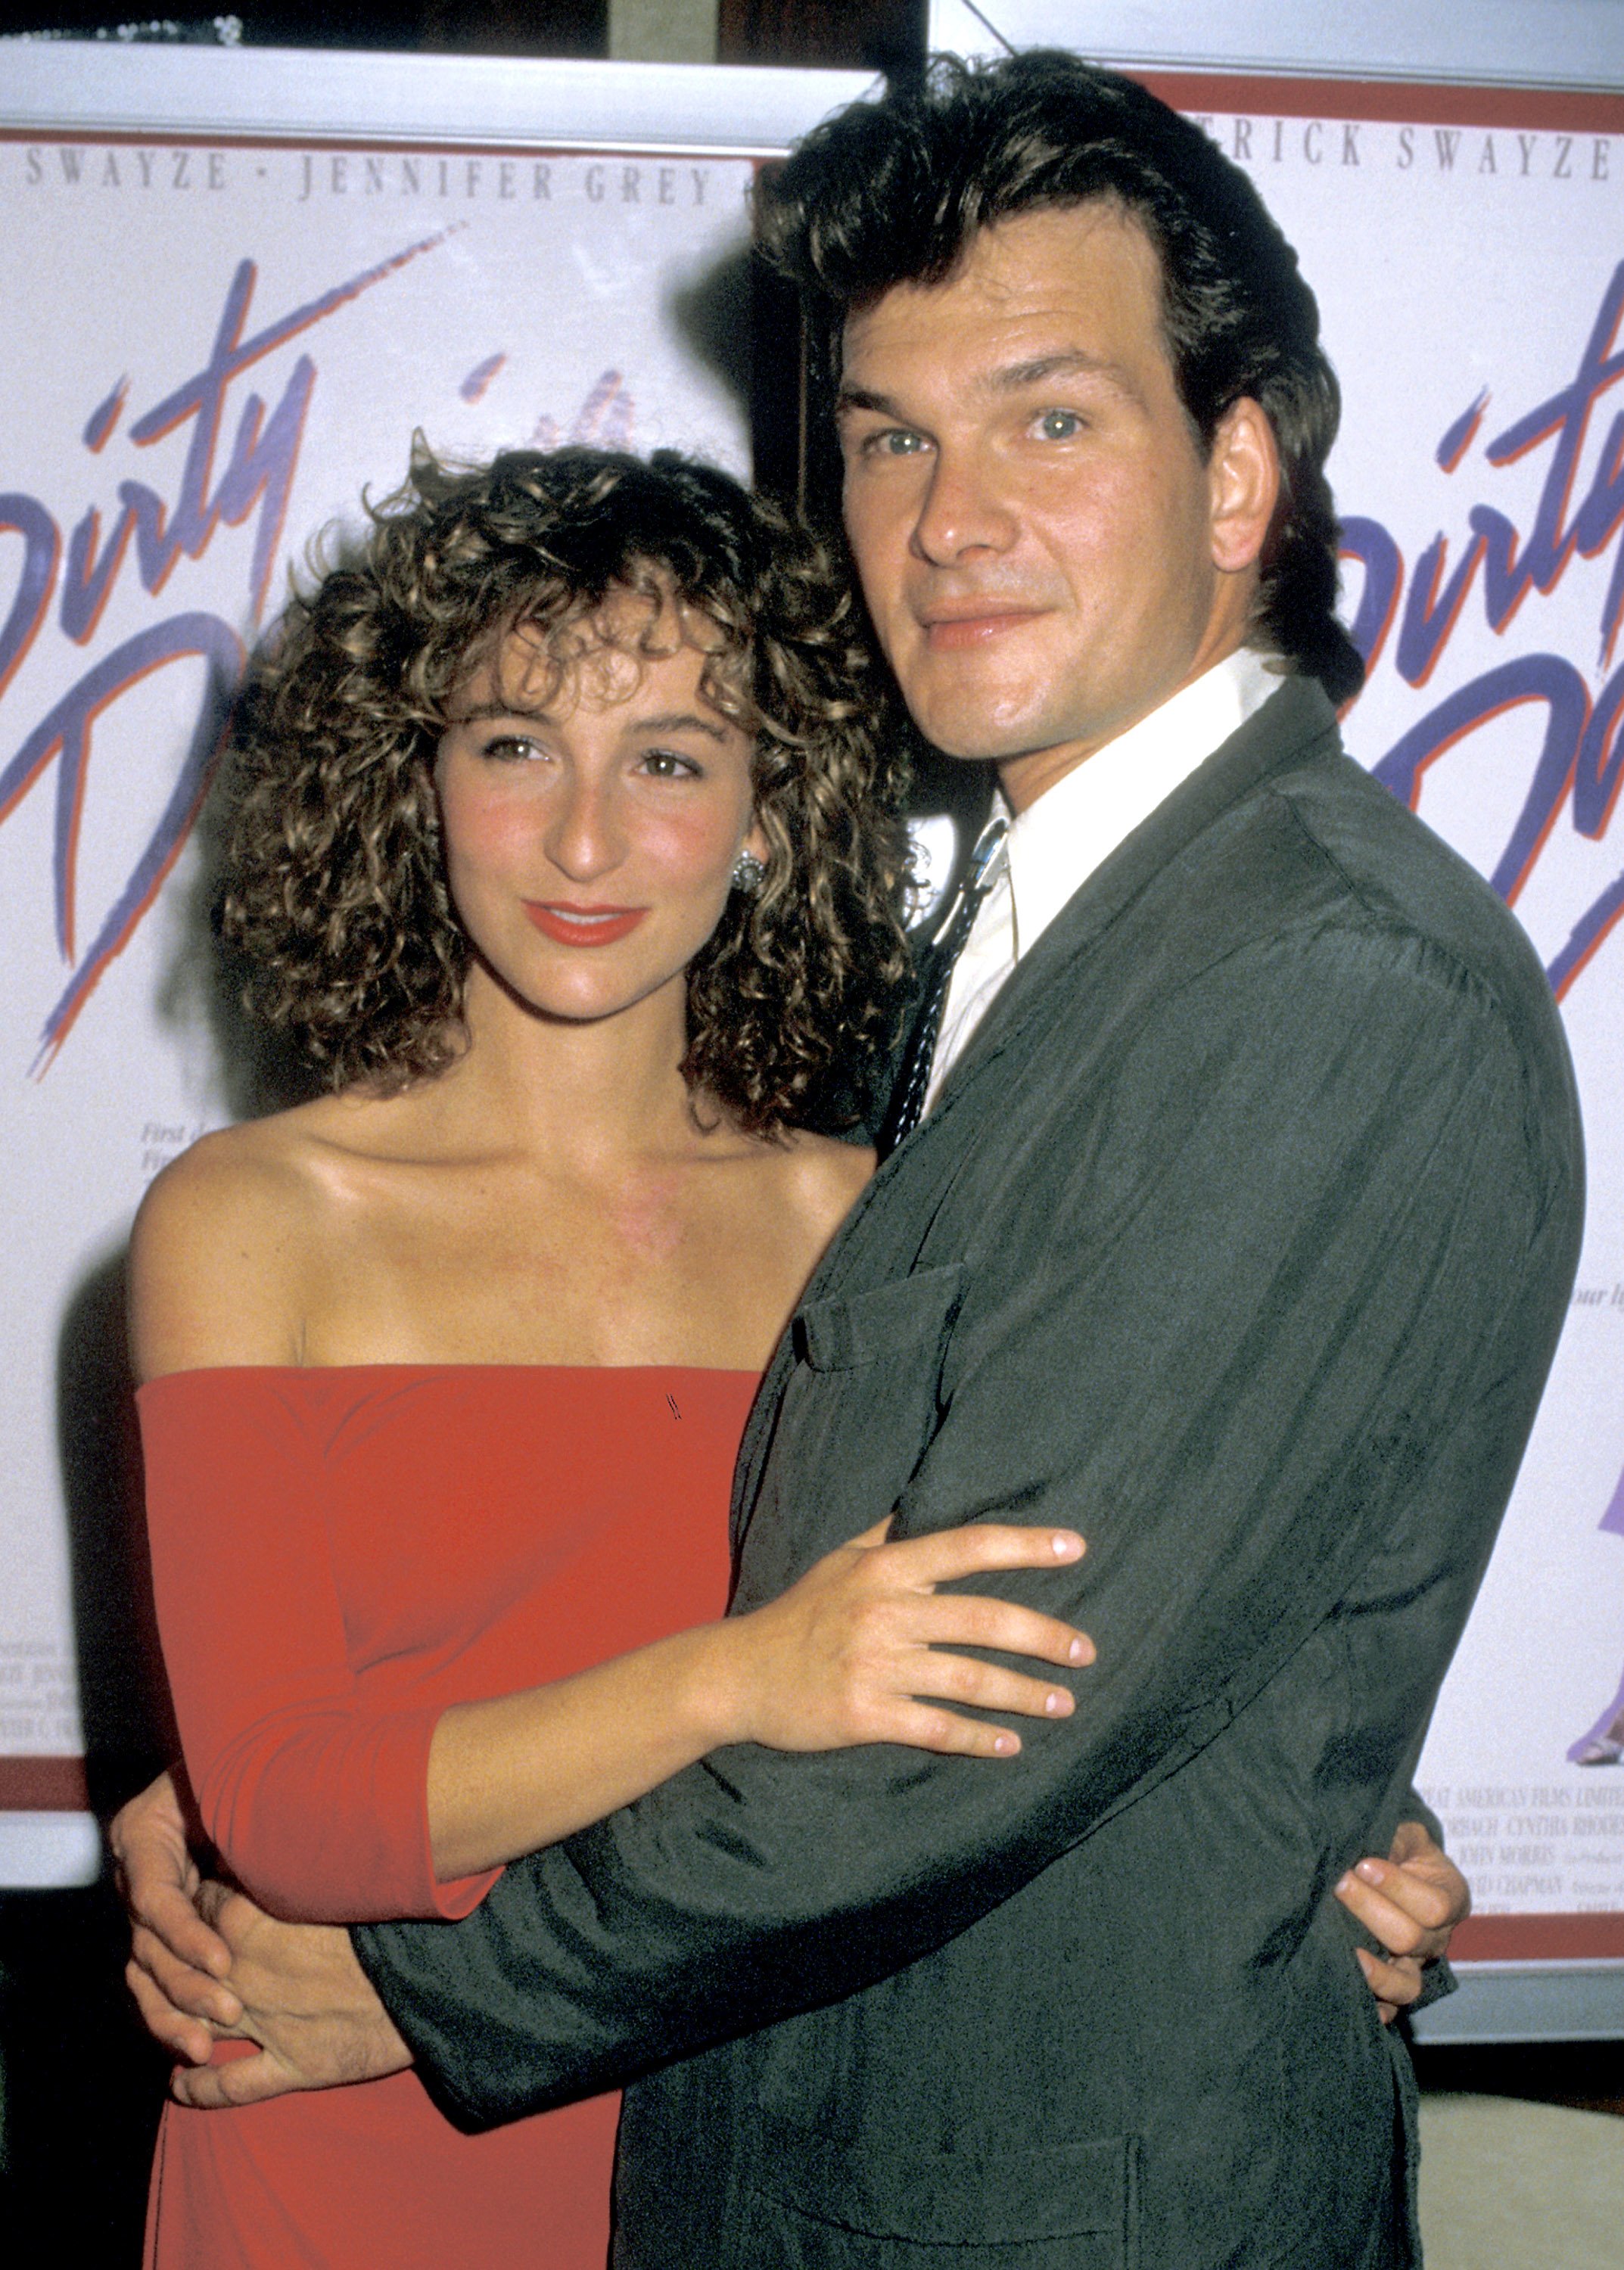 Jennifer Grey y Patrick Swayze durante el estreno de "Dirty Dancing" en el Gemini Theater, el 17 de agosto de 1987 en Nueva York. | Foto: Getty Images